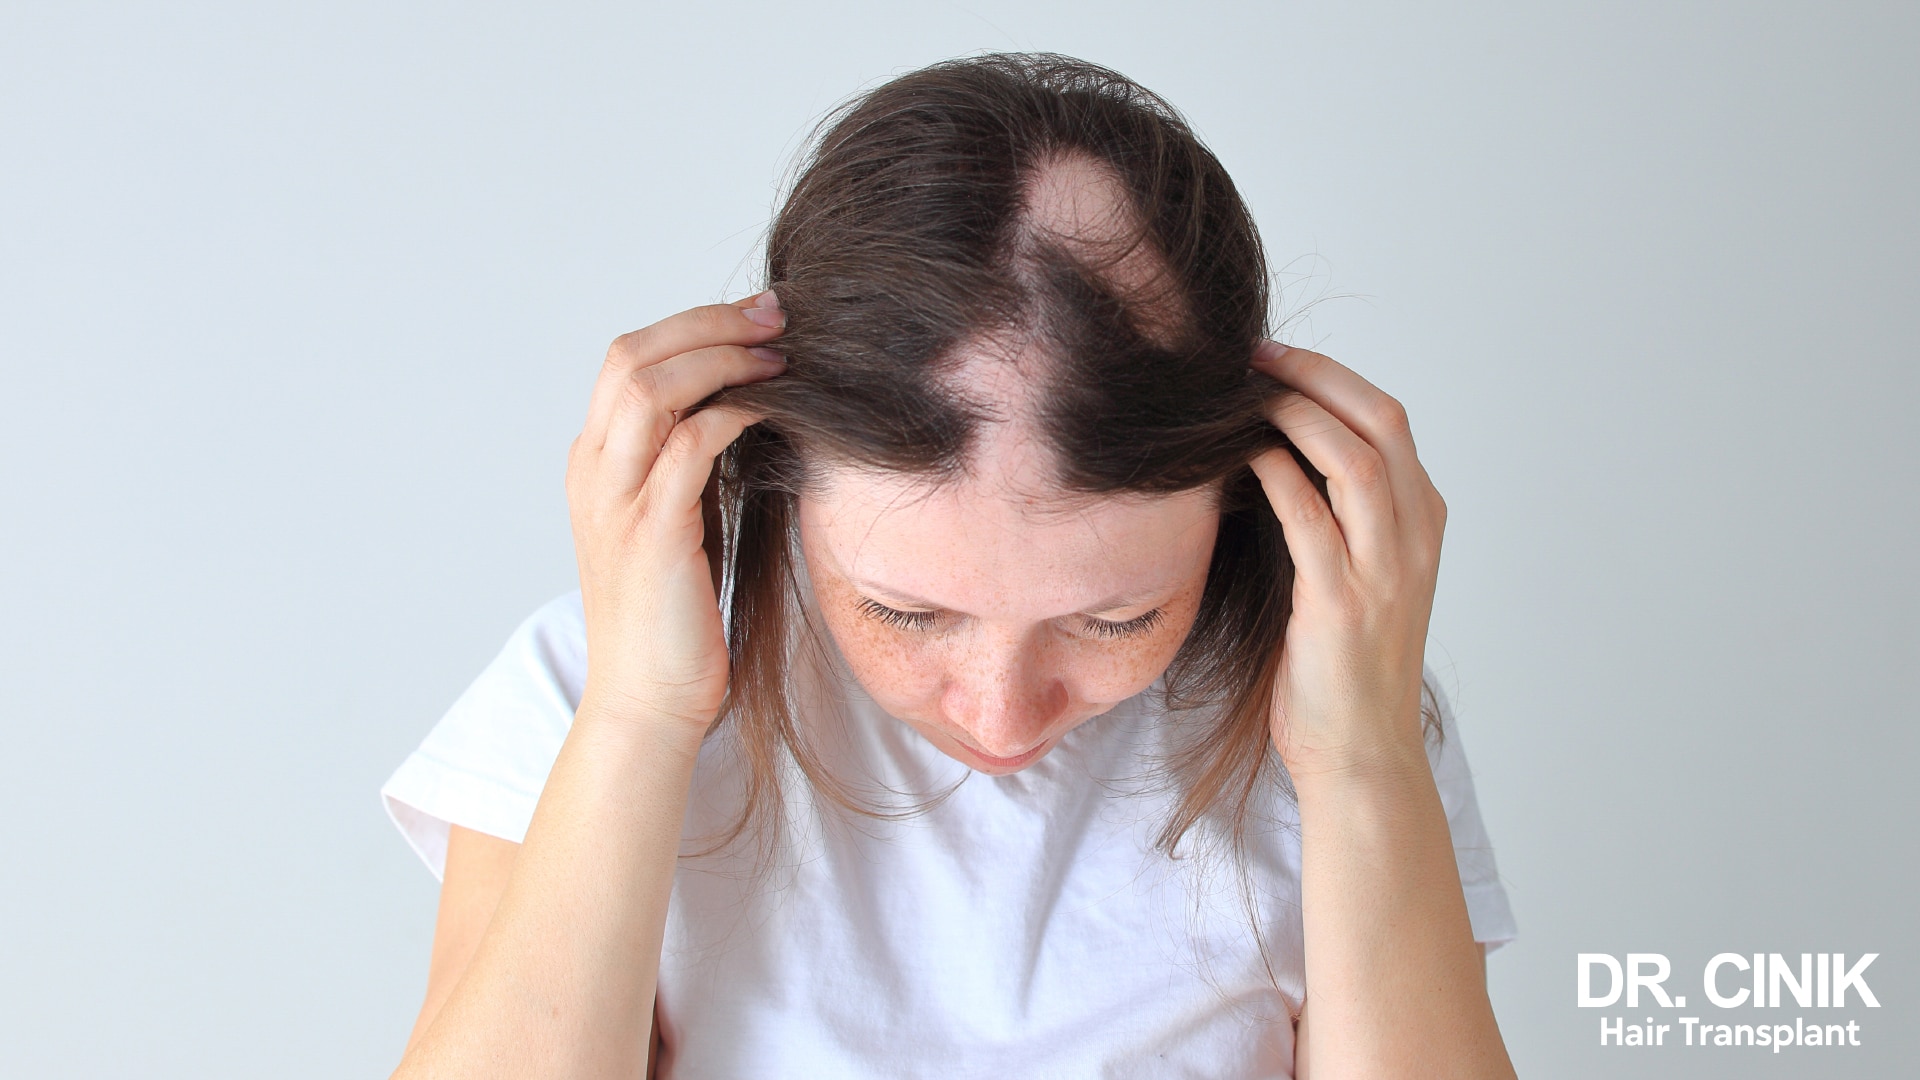 A women having andrgenetic alopecia